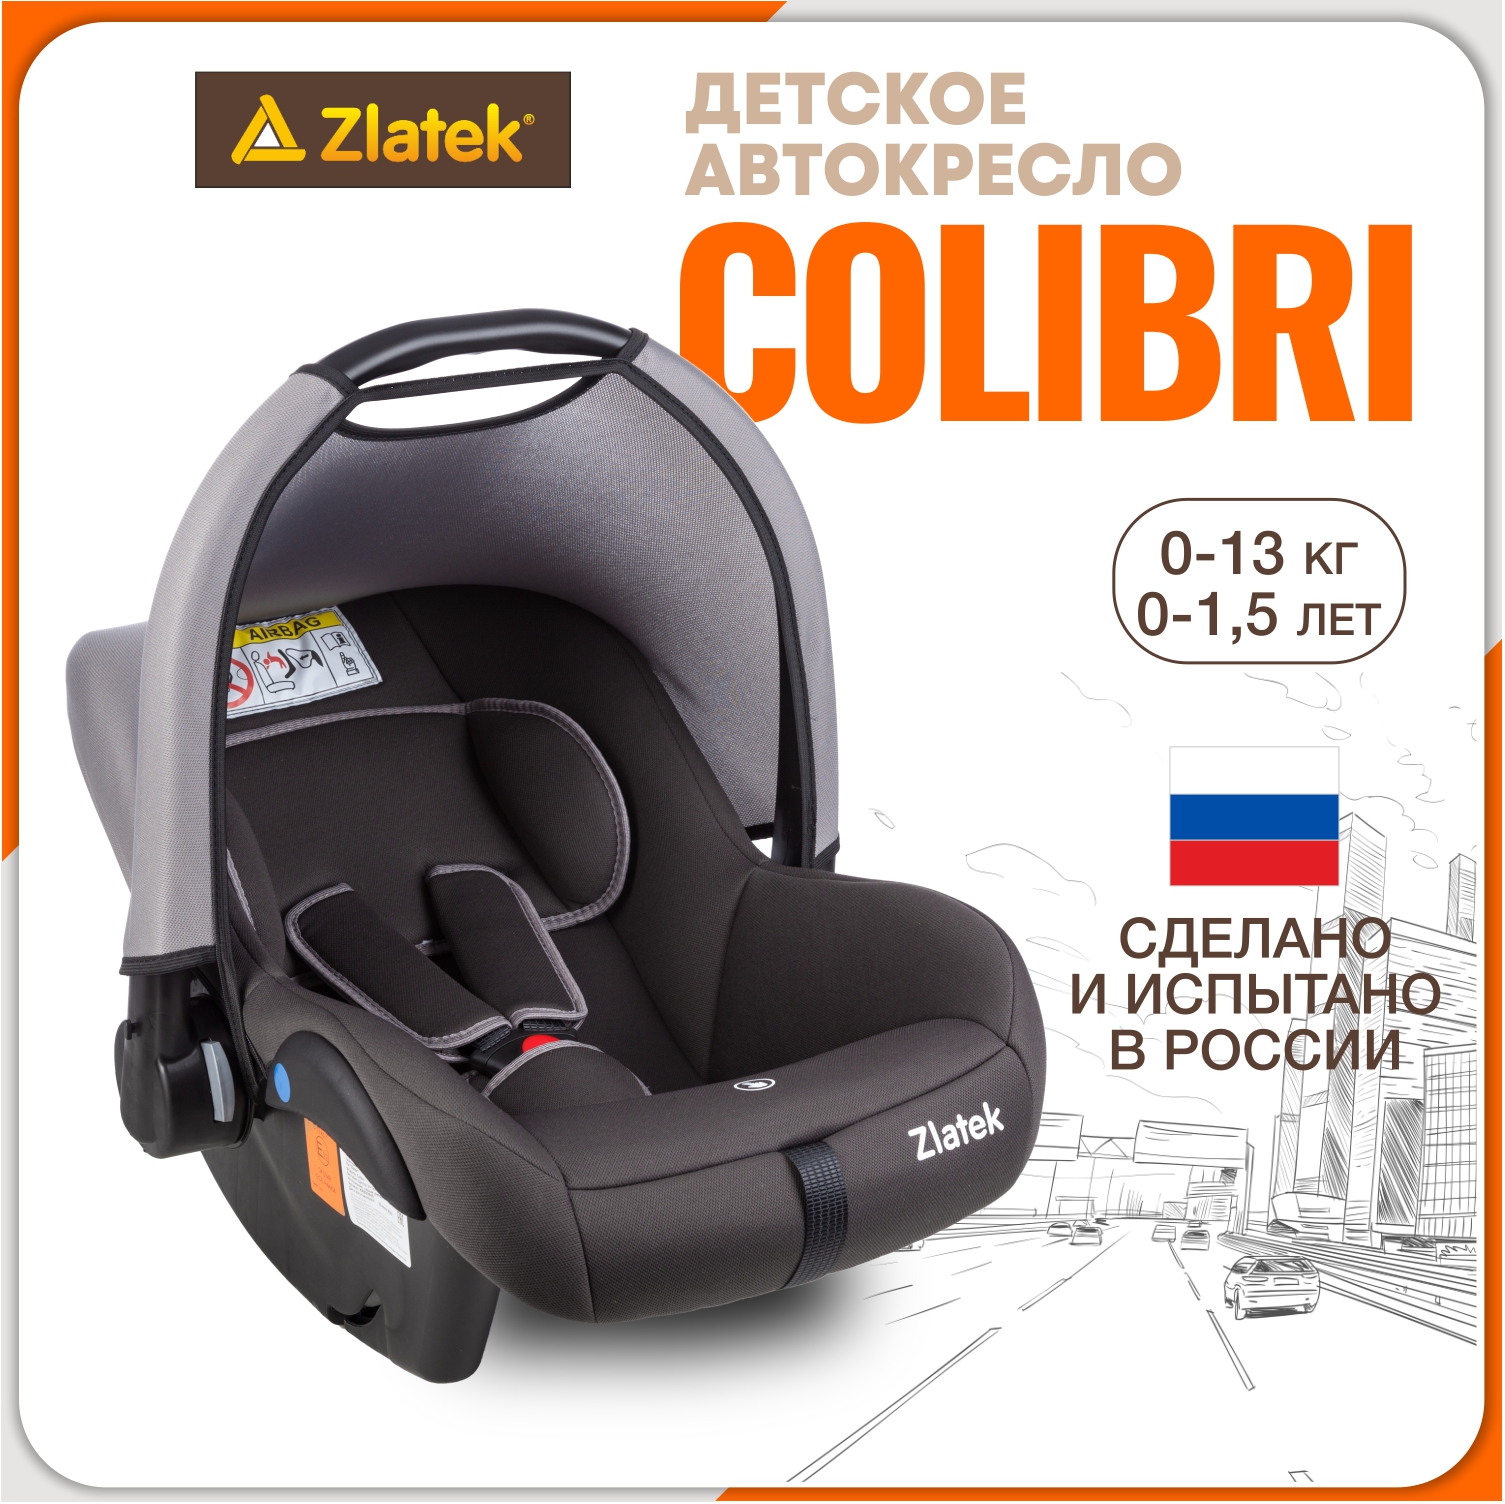 Автолюлька для новорожденных Zlatek Colibri от 0 до 13 кг, цвет серый умбра комплект в кроватку colibri